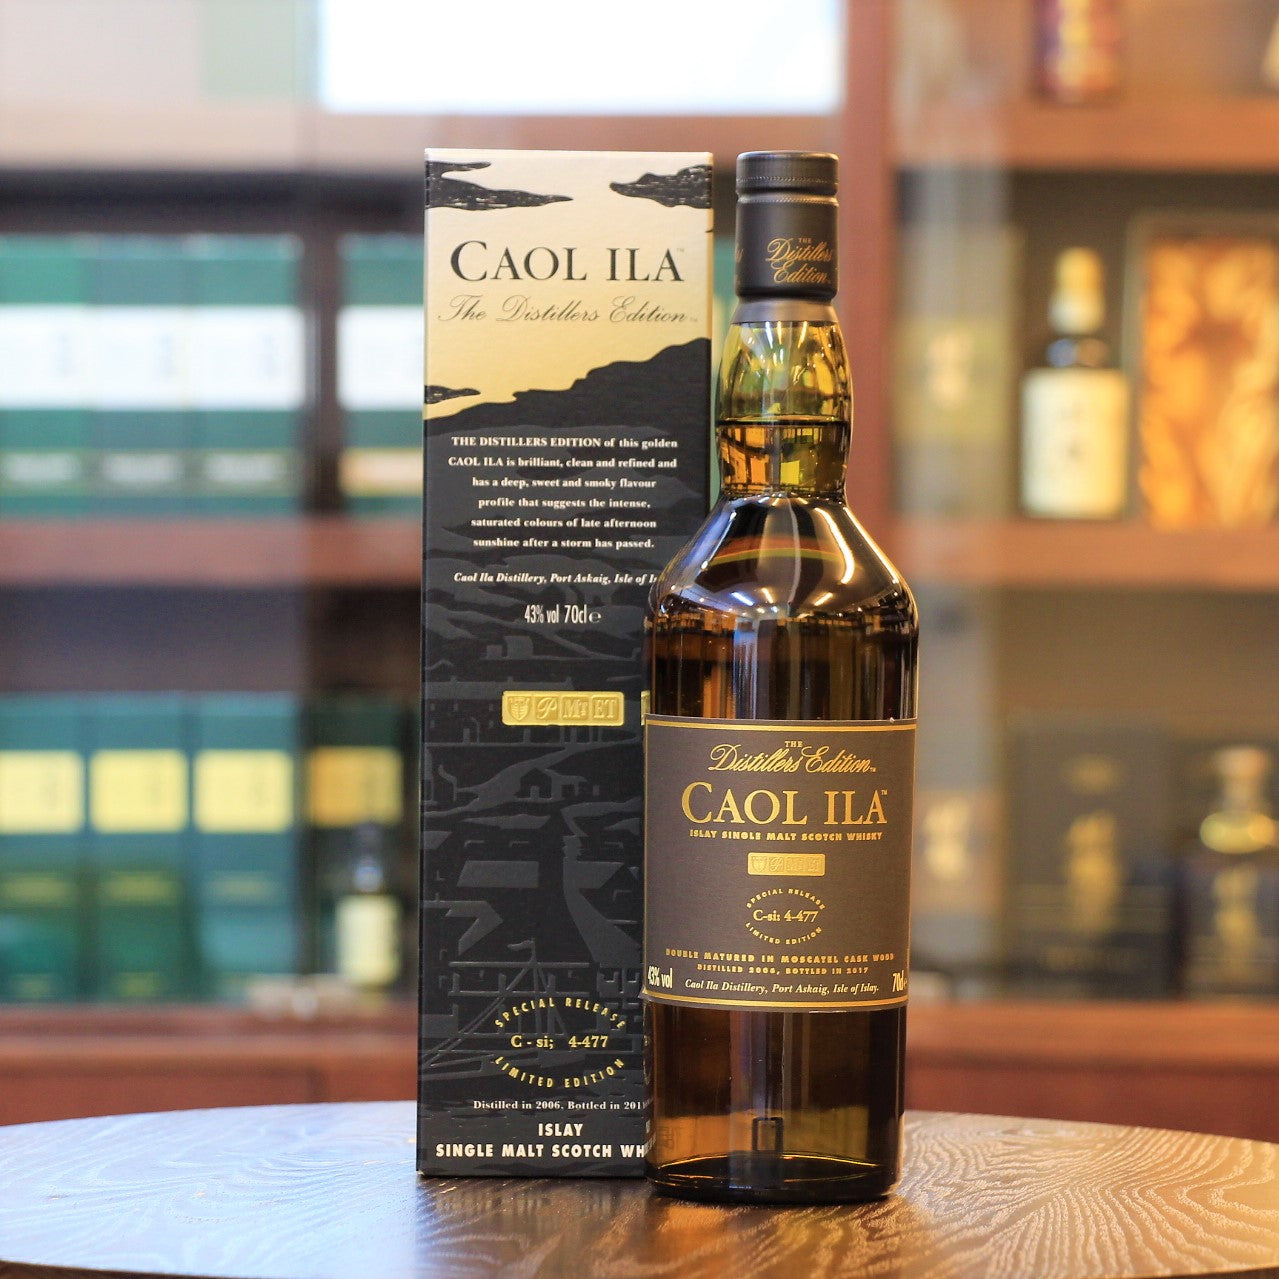 Caol ila, Scotch Single Malt Whisky, Island of Islay, Peated whisky, Distiller's Edition 10 years old 